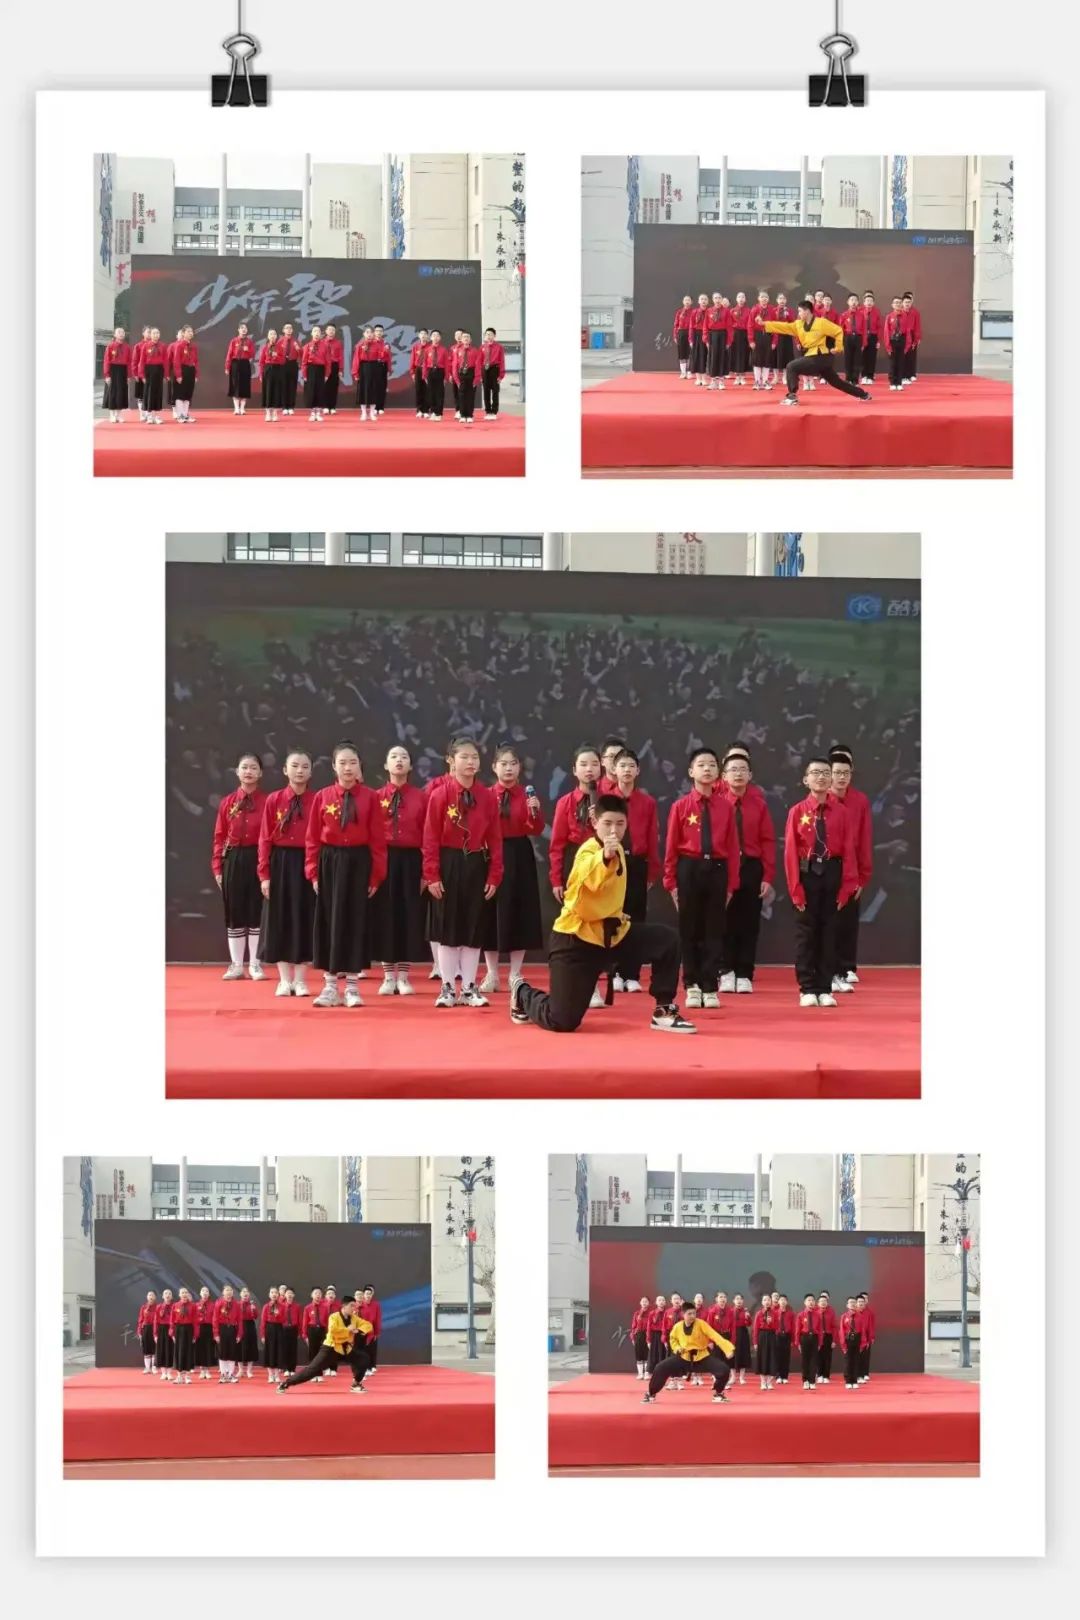 睢宁县第二中学新教育实验第一届诗词展演暨喜迎新年盛会